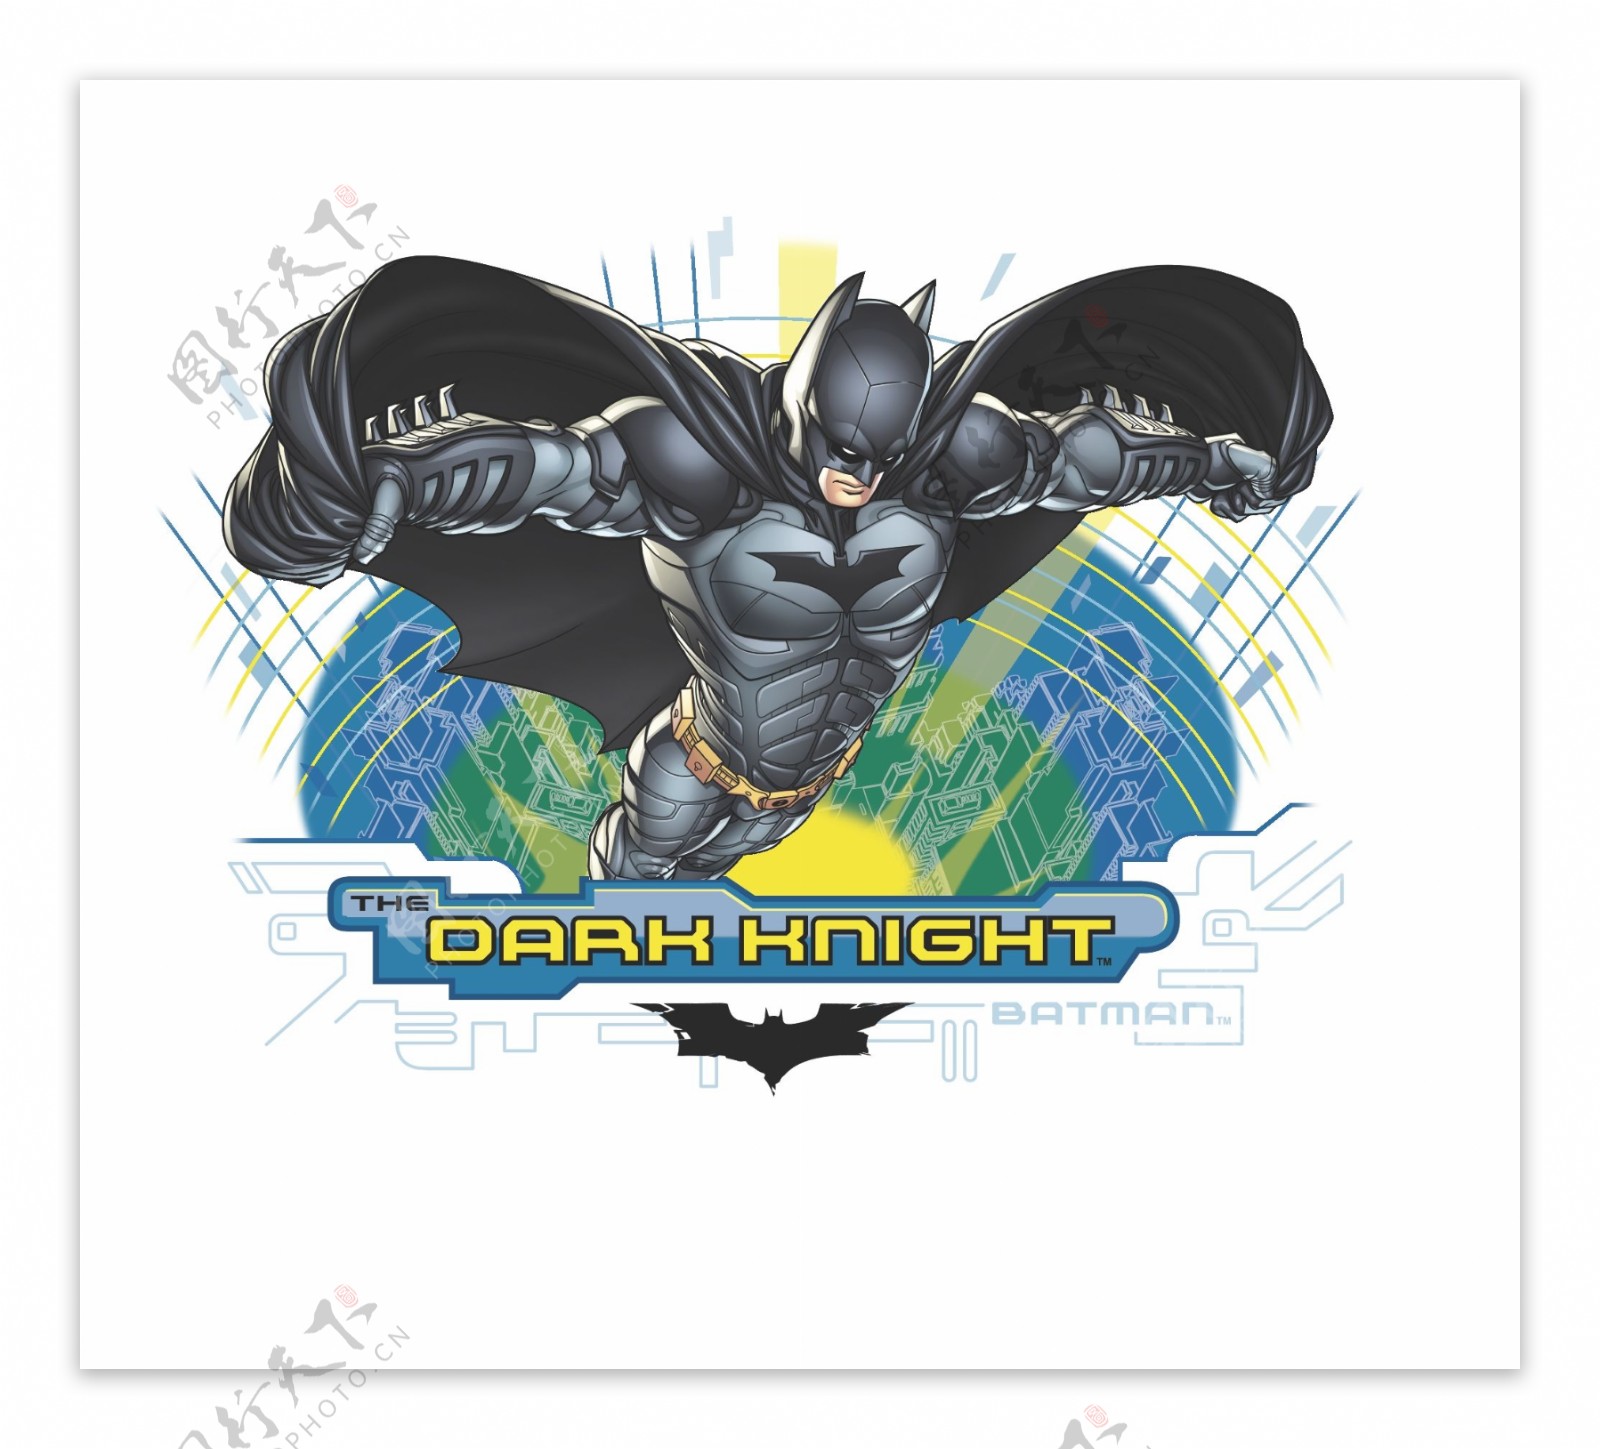 batman蝙蝠侠